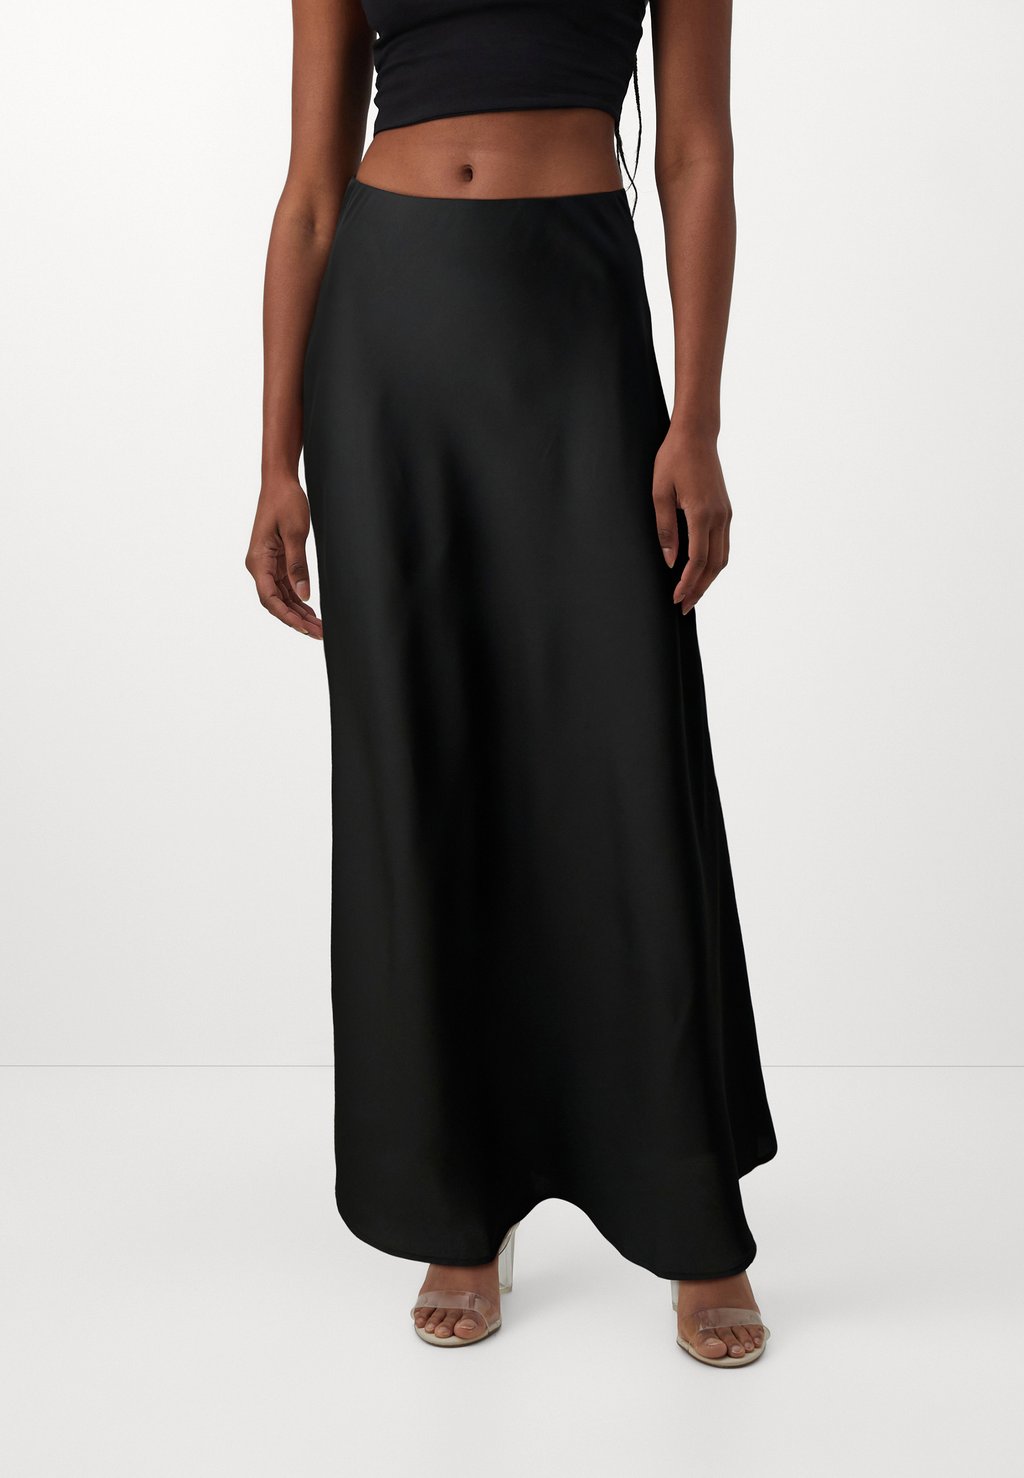 Юбка длинная Visahra Ancle Skirt VILA, черный